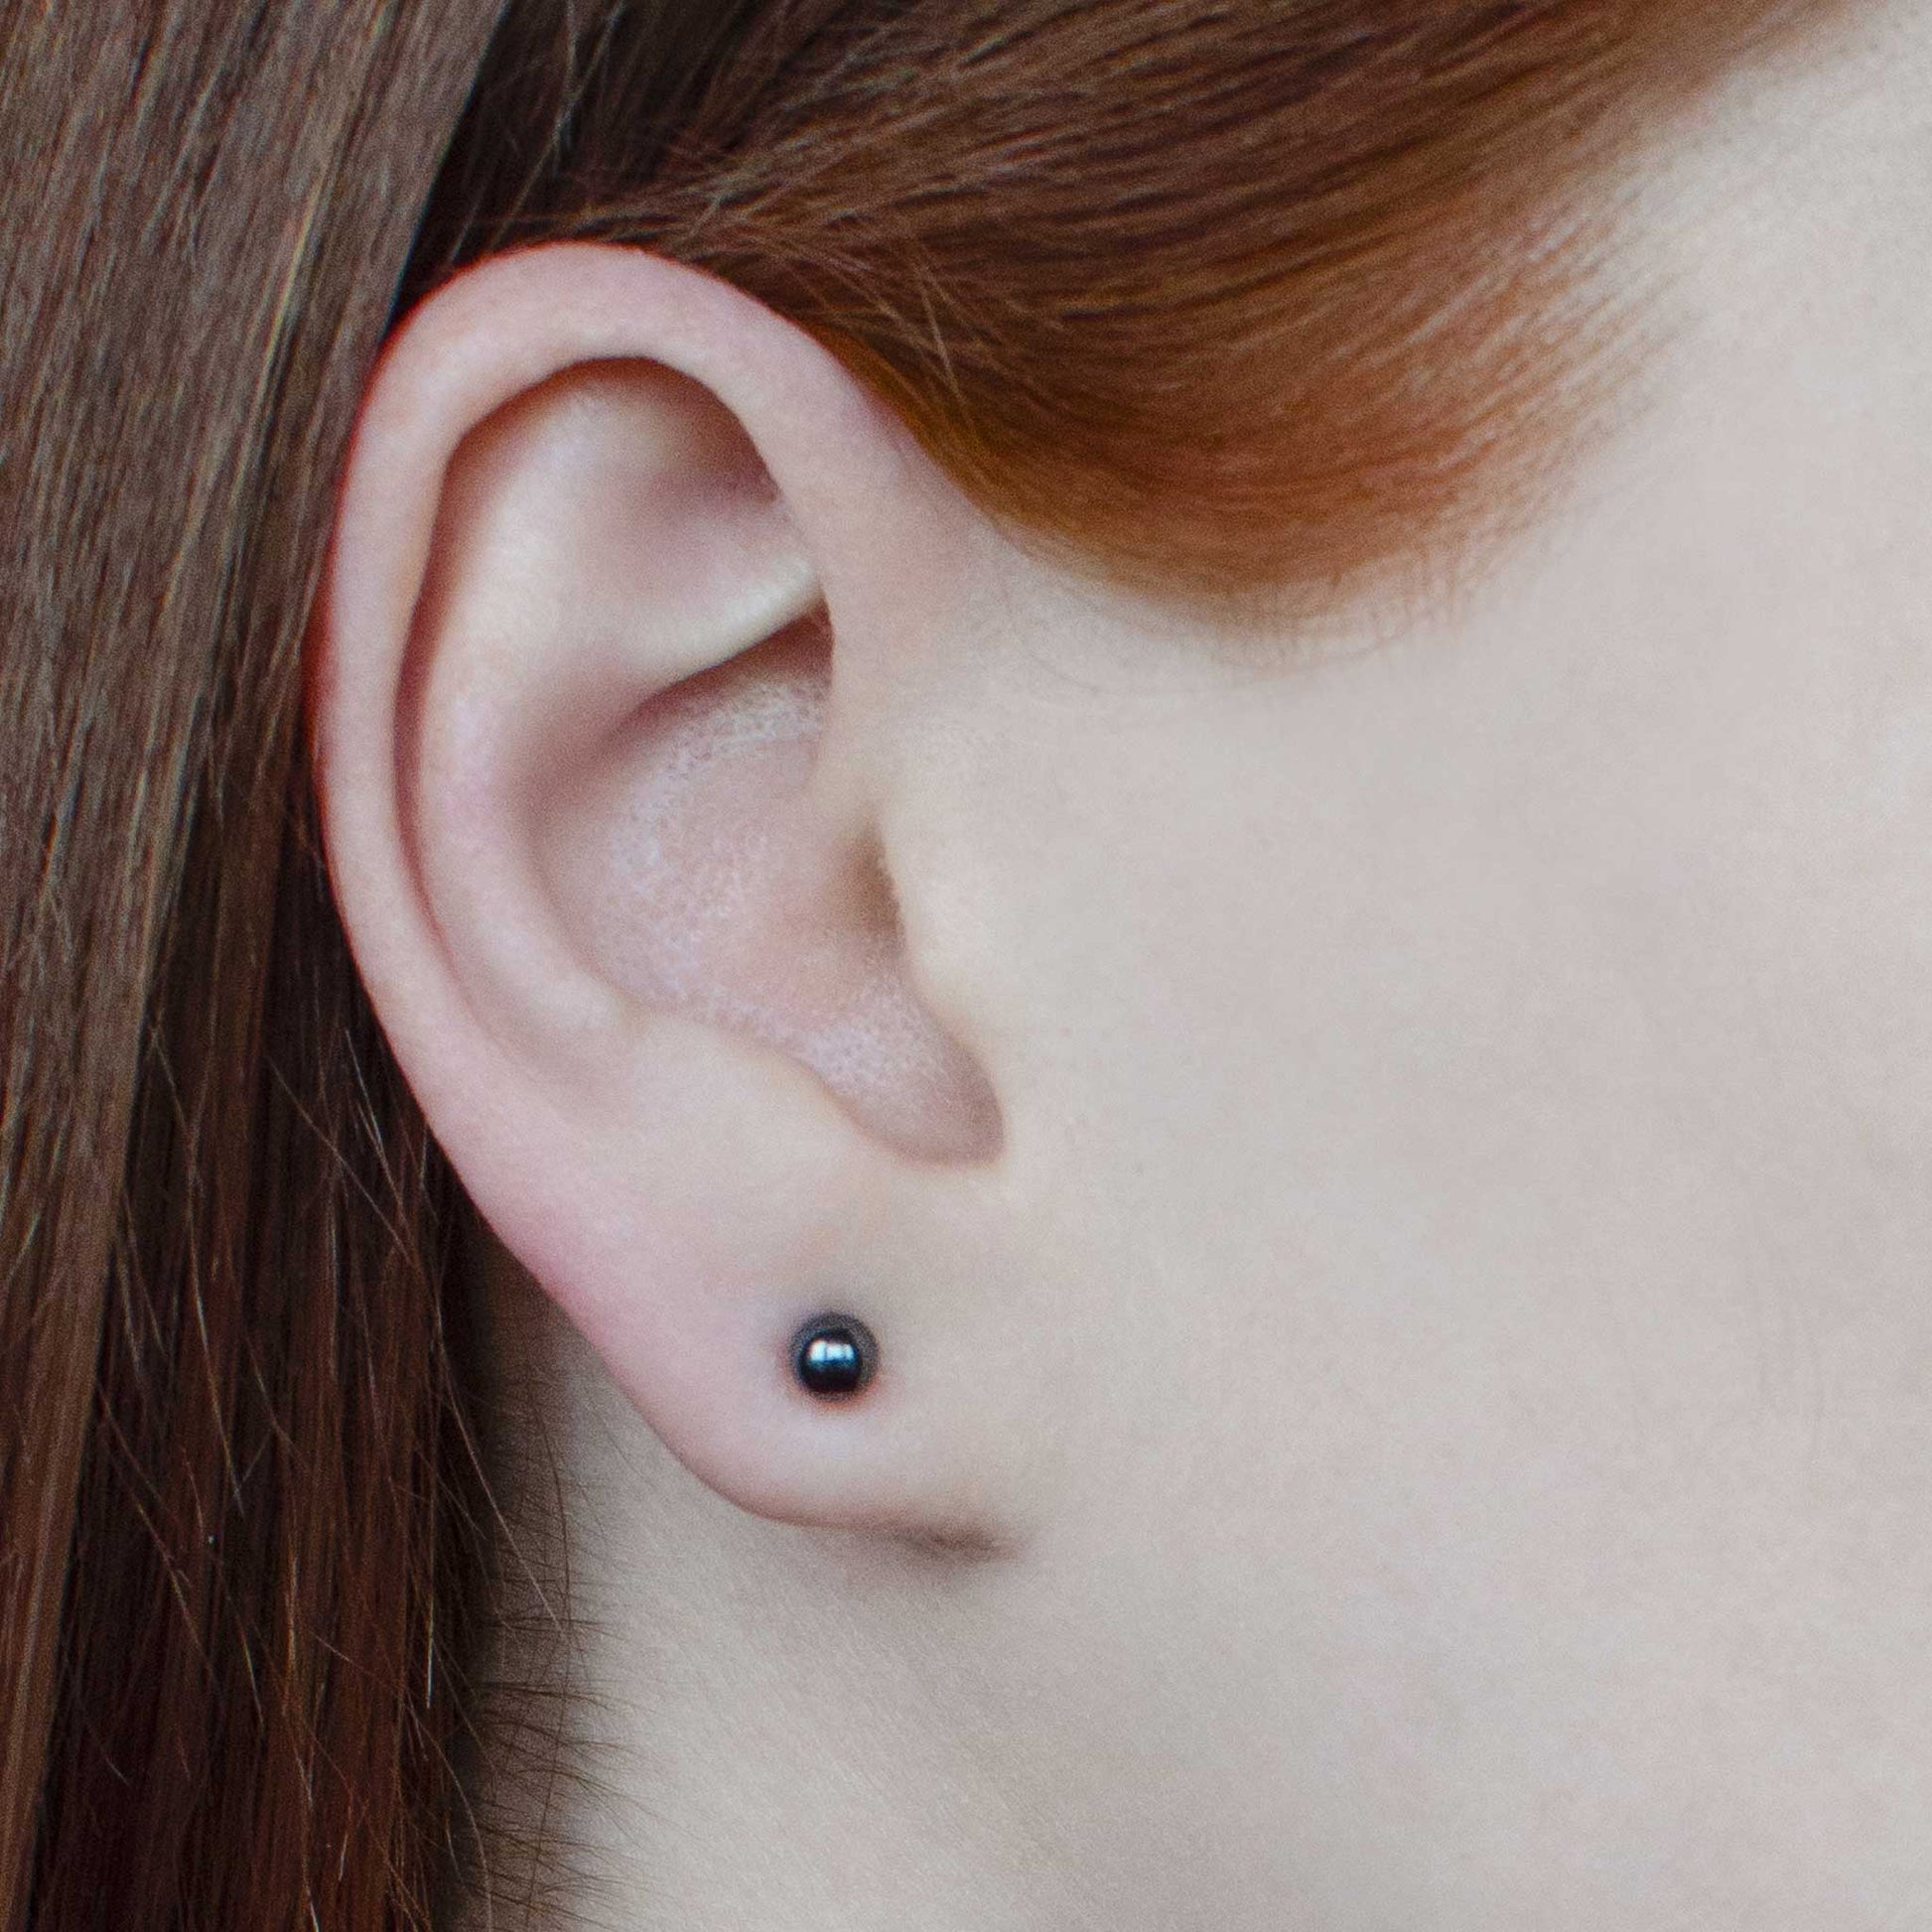 Woman wearing small hematite earrings stud in earlobe